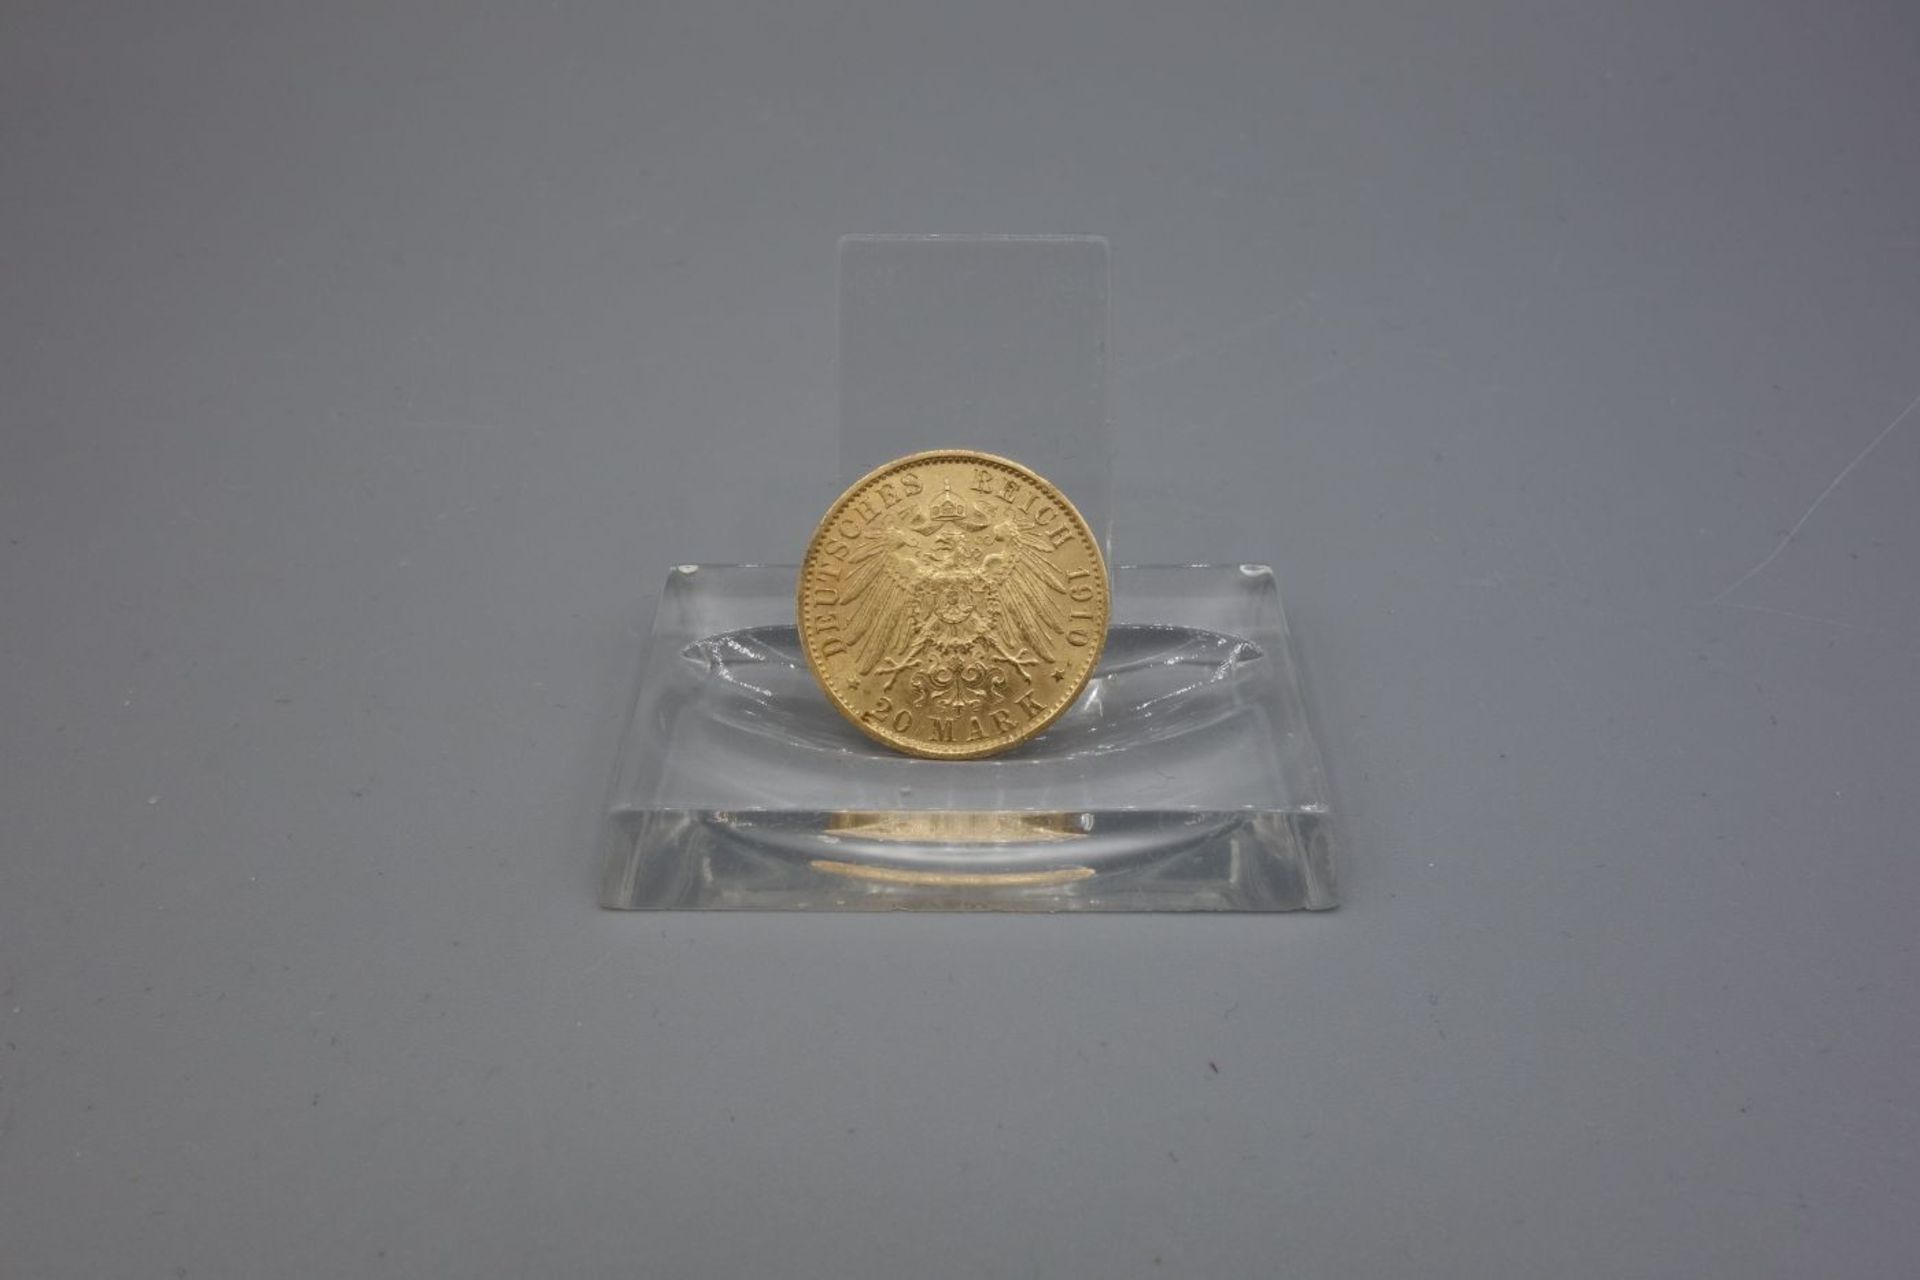 REICHSGOLDMÜNZE KAISER WILHELMS II. / coin, 7,5 g. Umlaufgoldmünze des deutschen Kaiserreichs. - Bild 2 aus 2